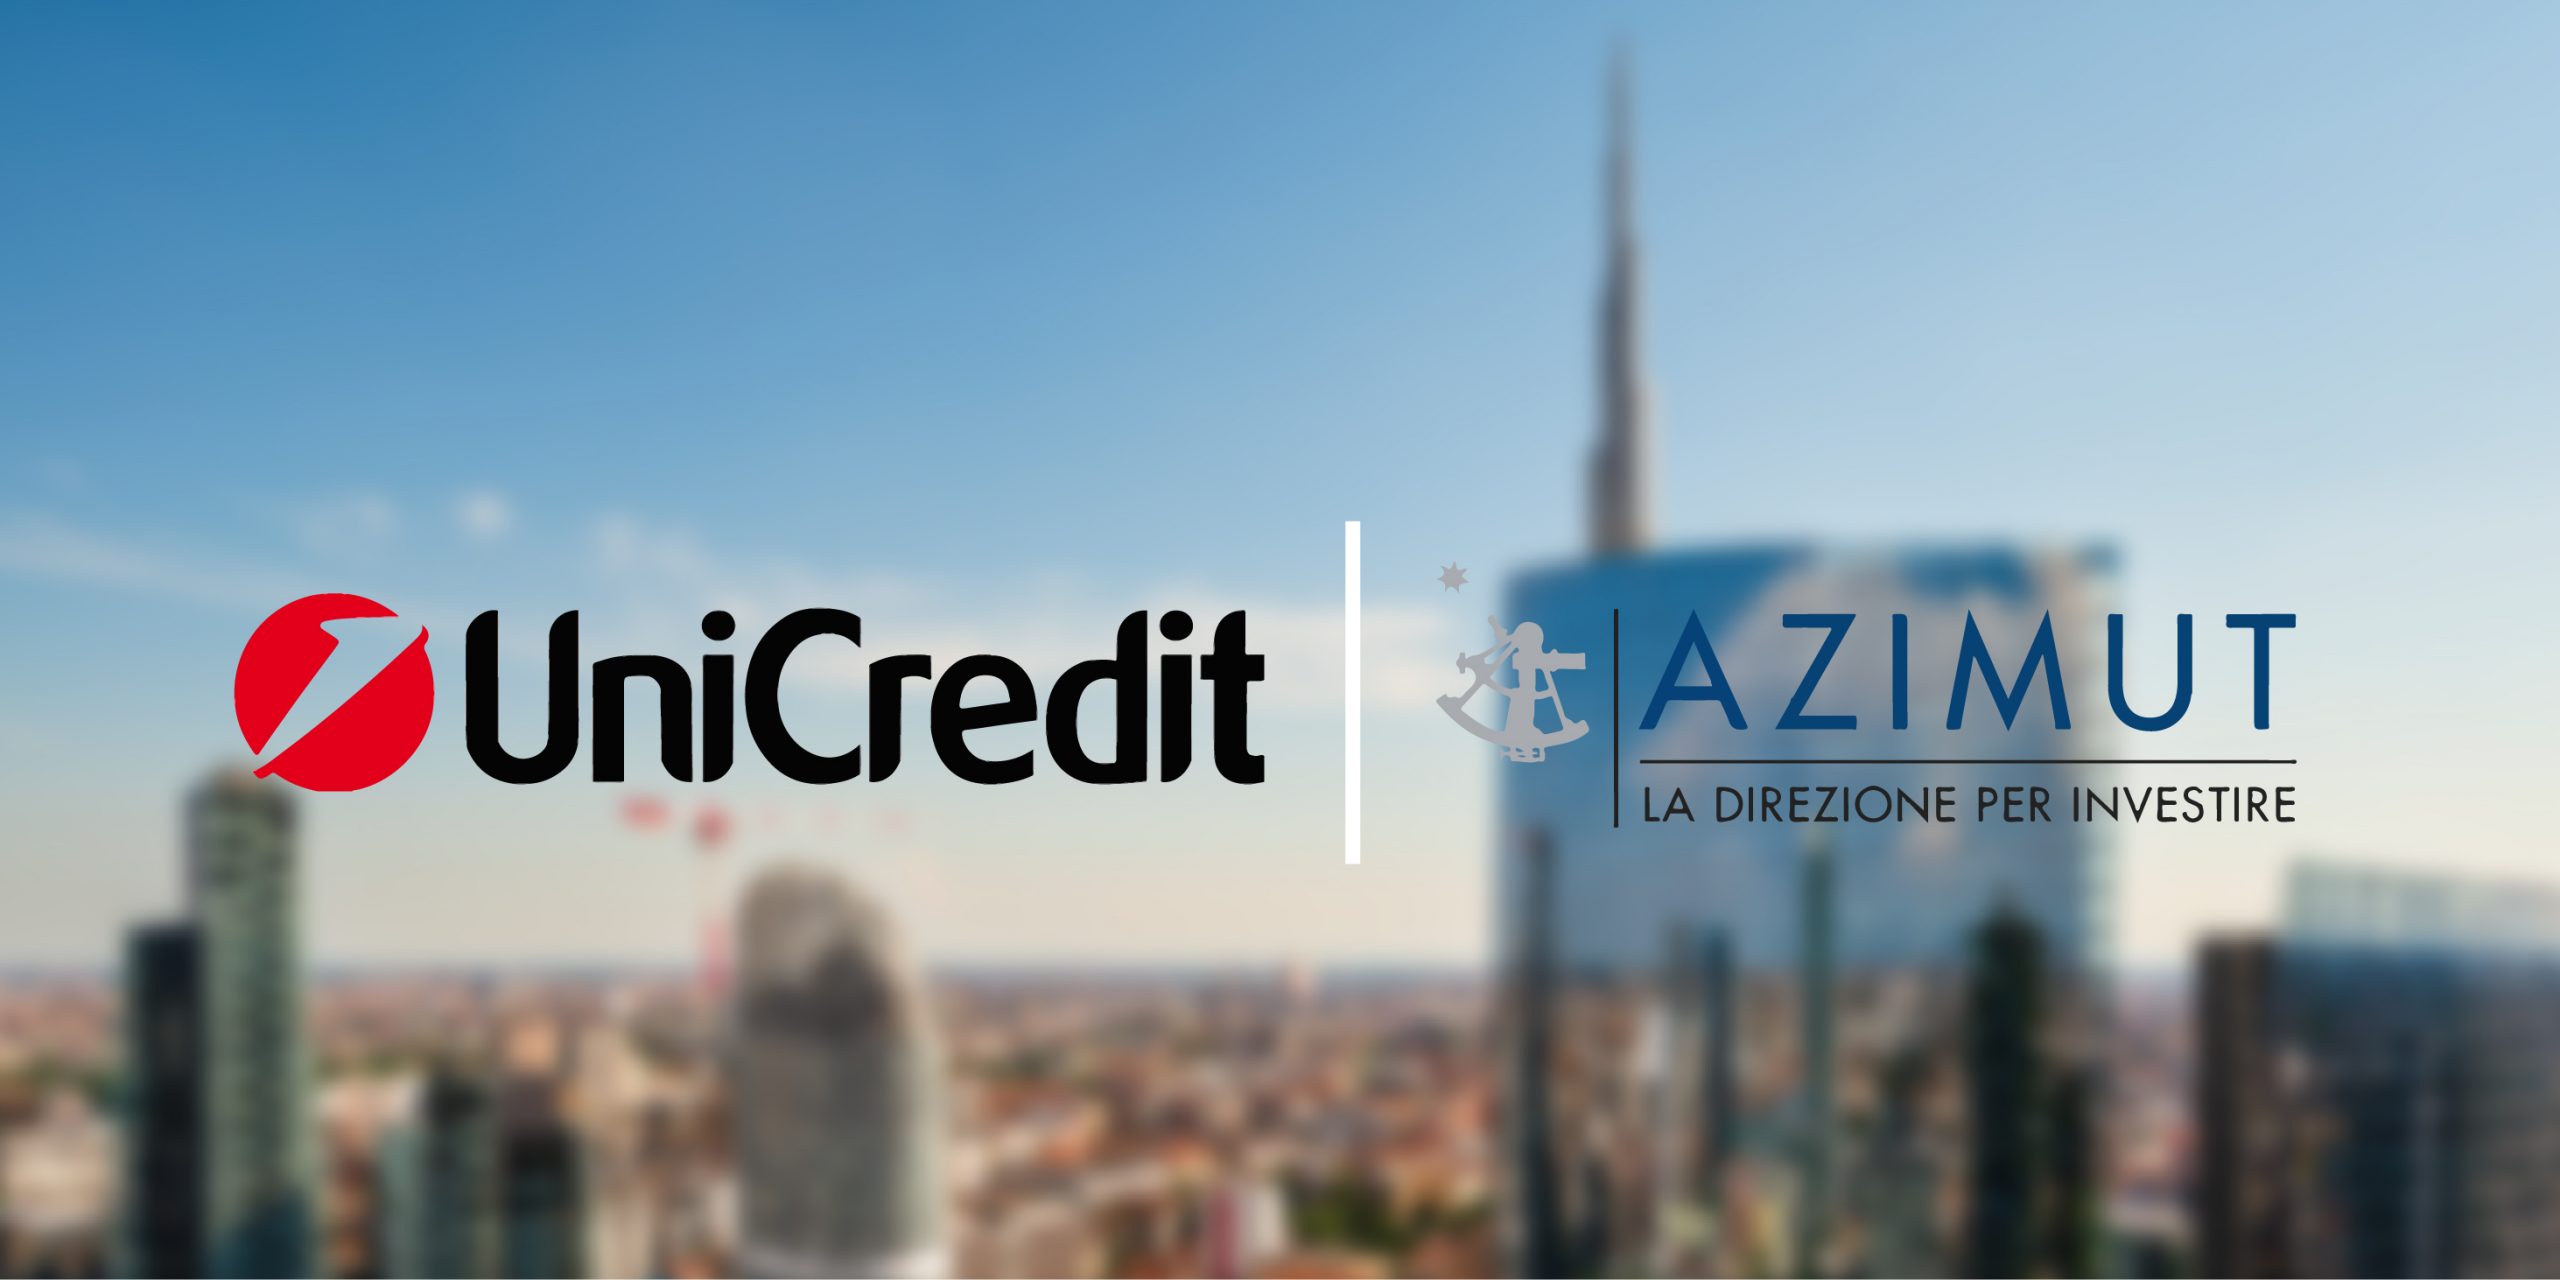 financialounge -  Azimut finanza risparmio gestito Unicredit